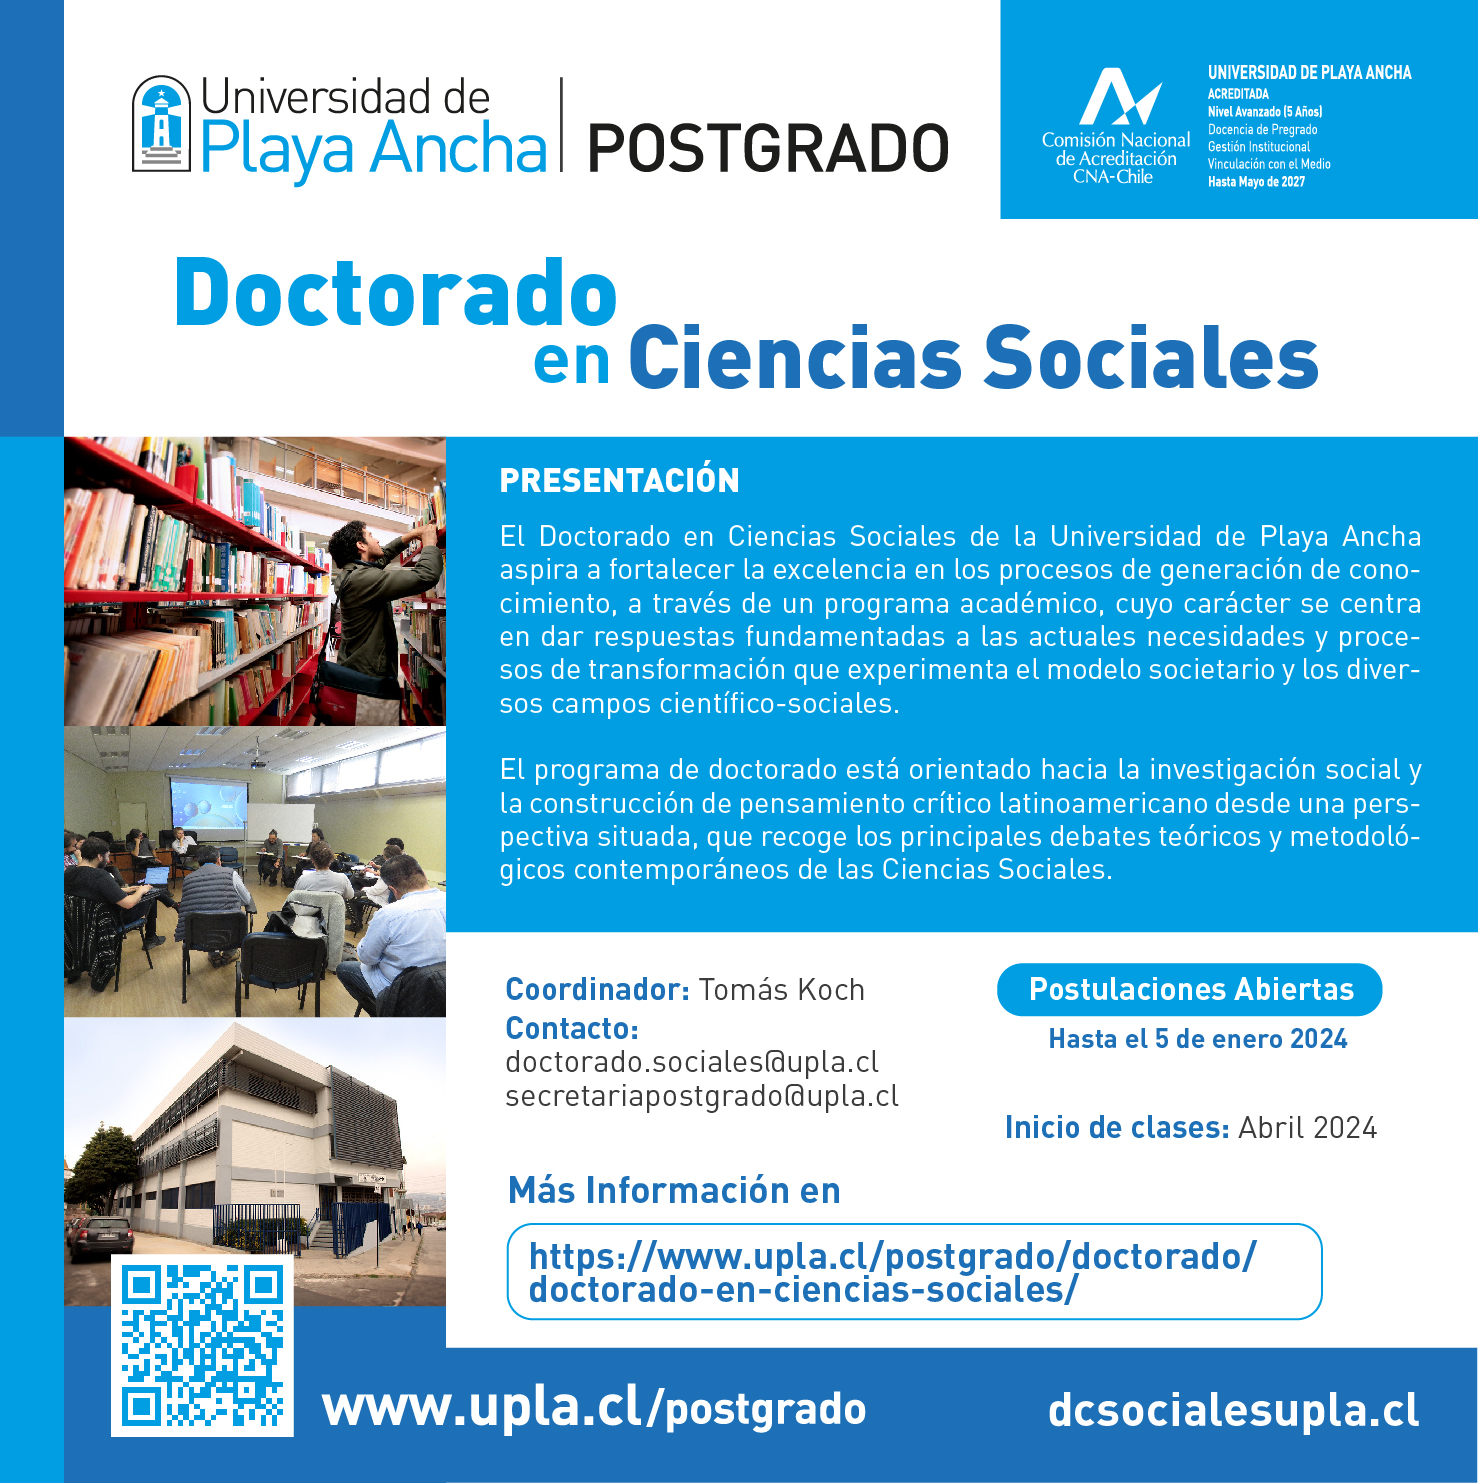 Afiche del Doctorado en Ciencias Sociales de la Universidad de Playa Ancha